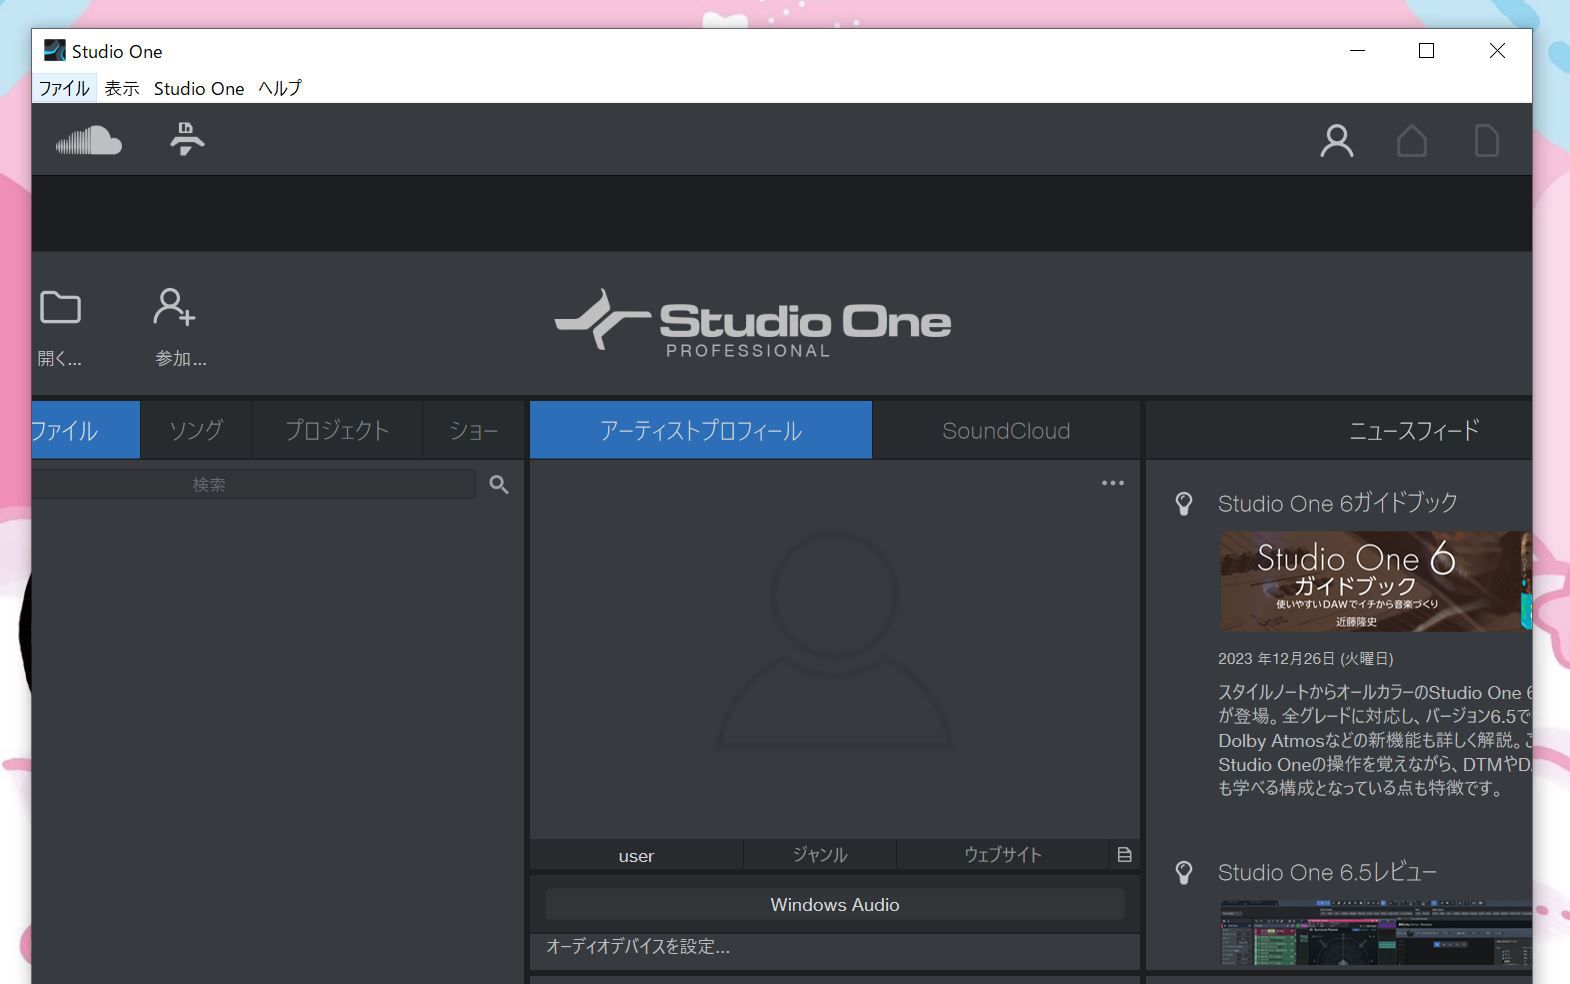 Studio One Professionalの起動画面